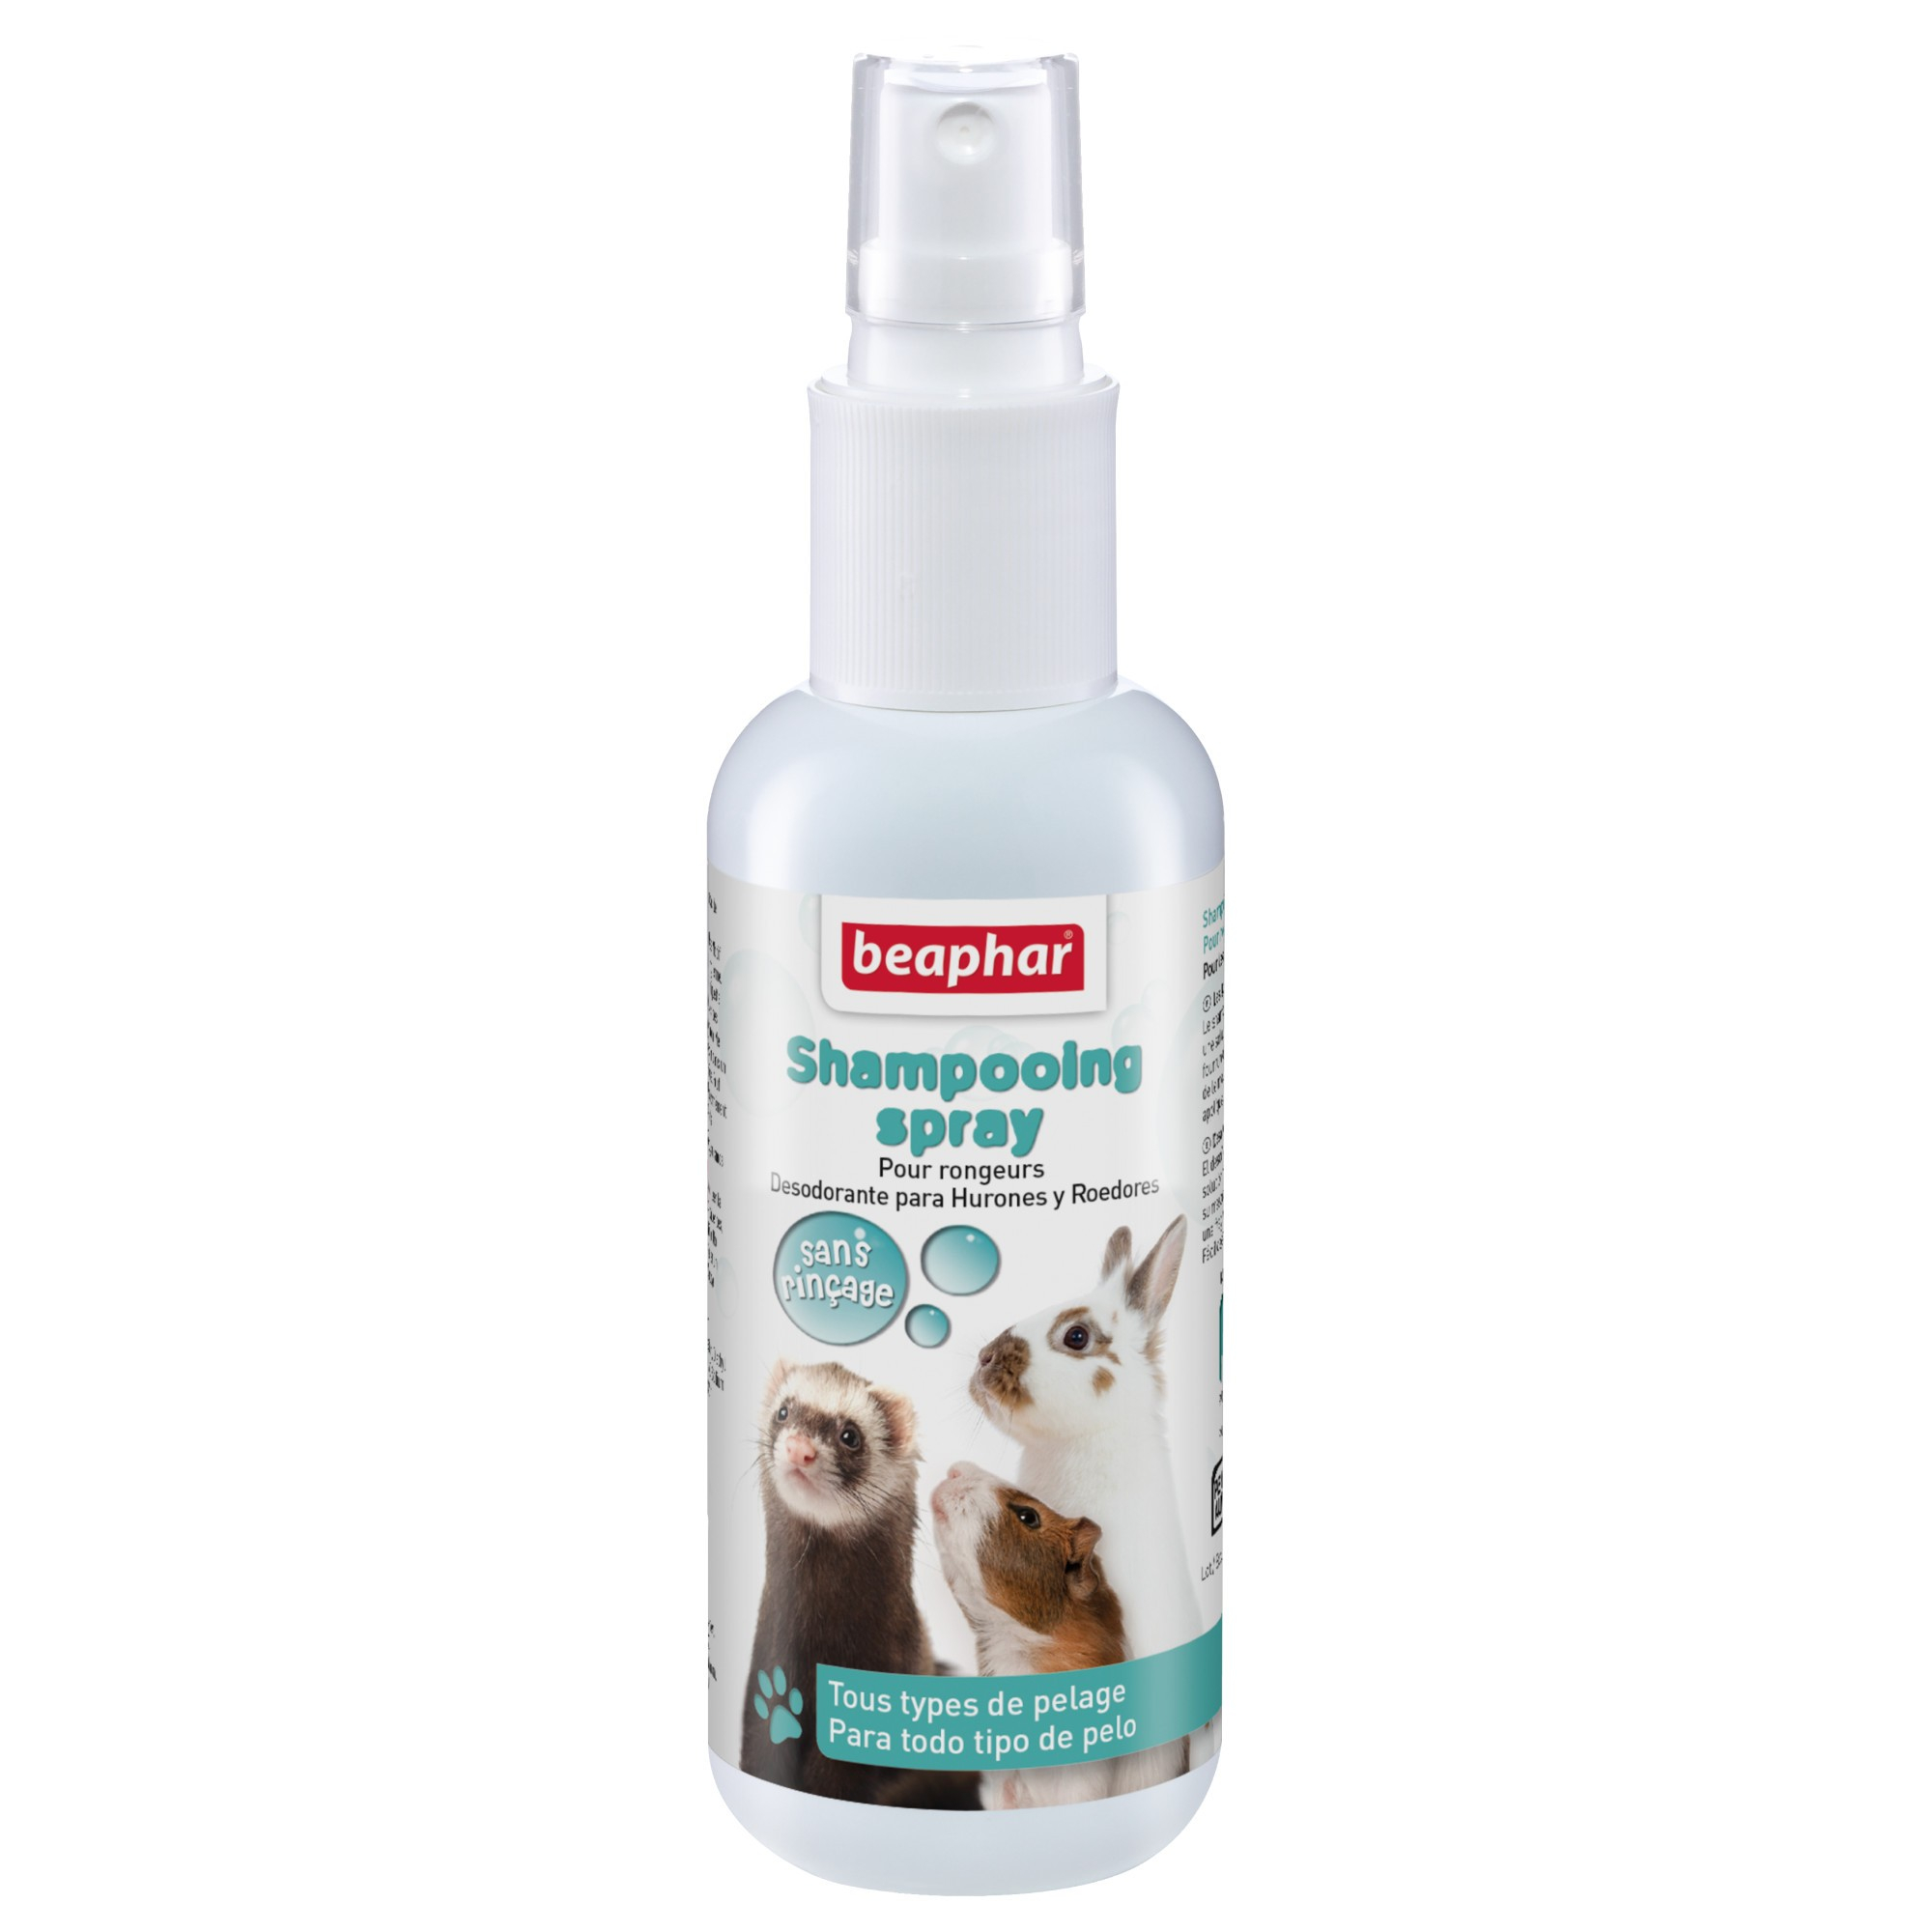 Shampoo spray zonder spoelen voor knaagdieren